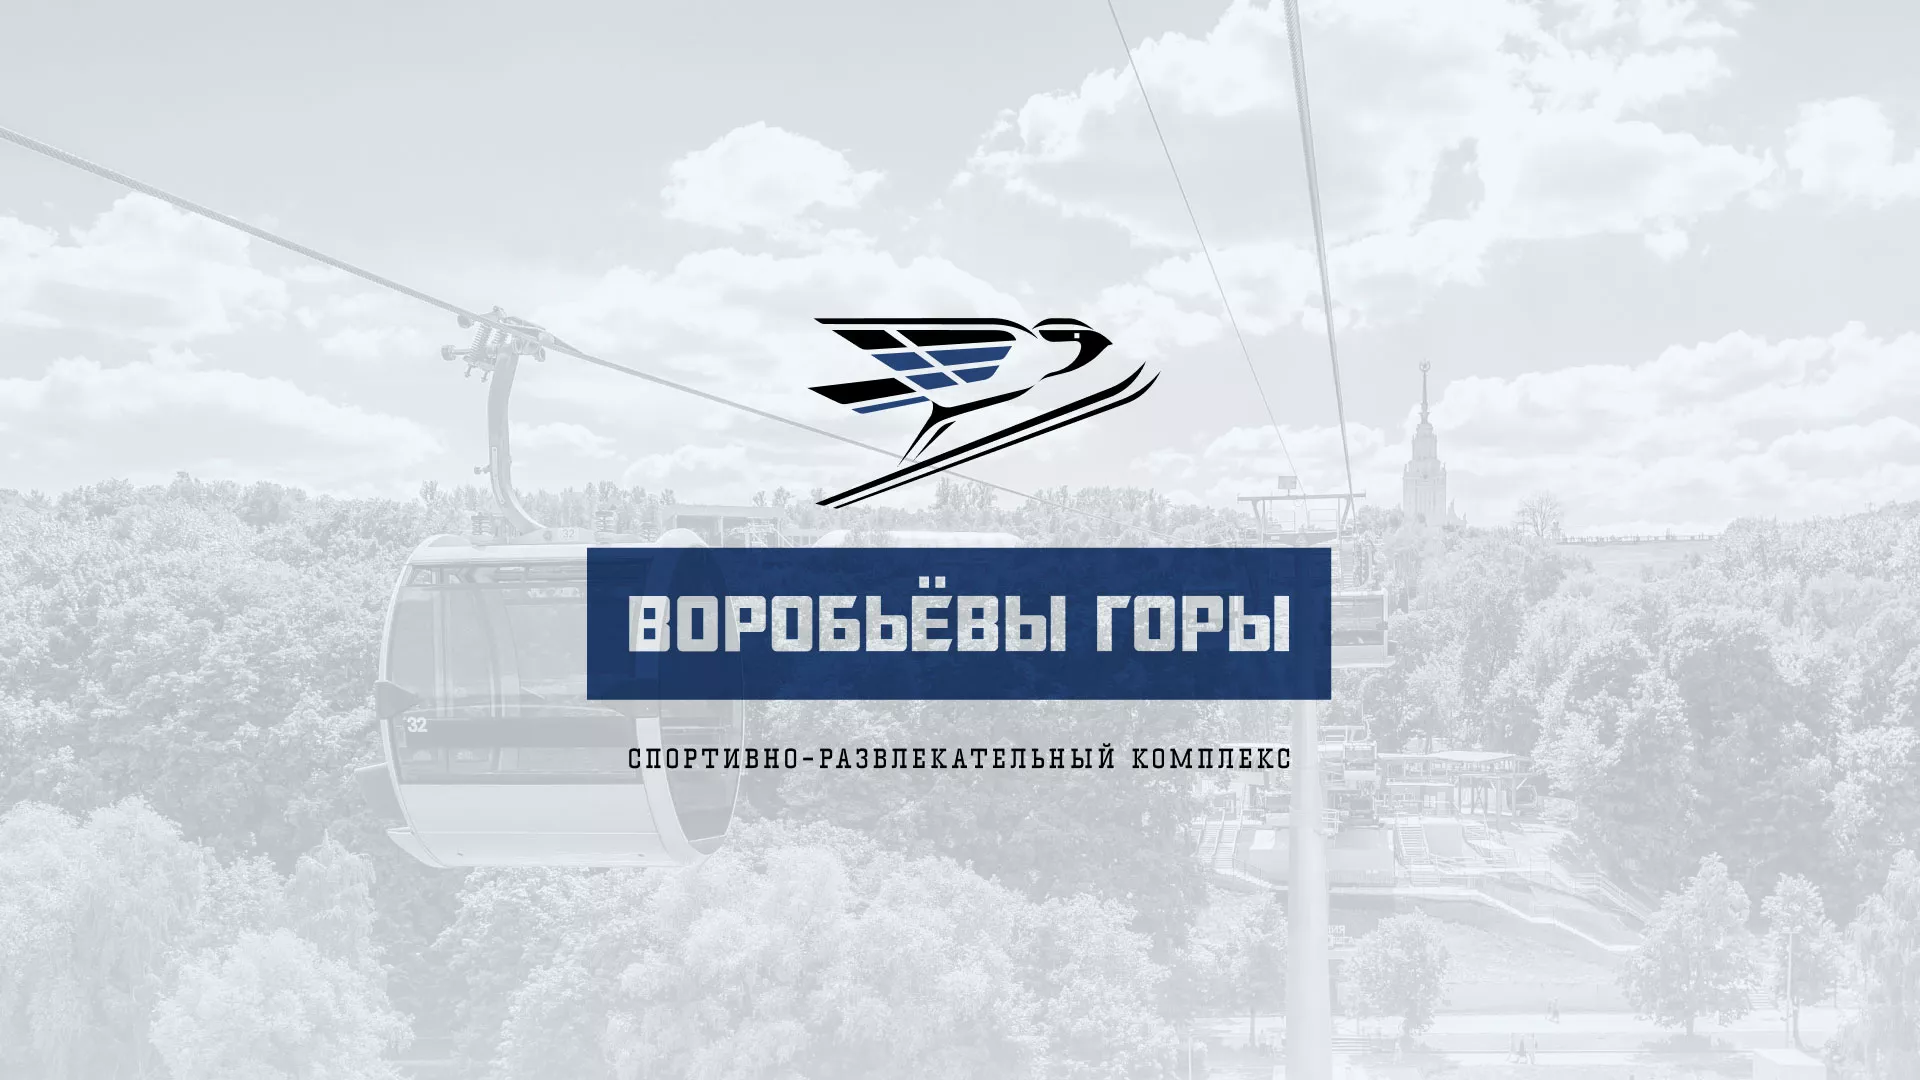 Разработка сайта в Нерчинске для спортивно-развлекательного комплекса «Воробьёвы горы»